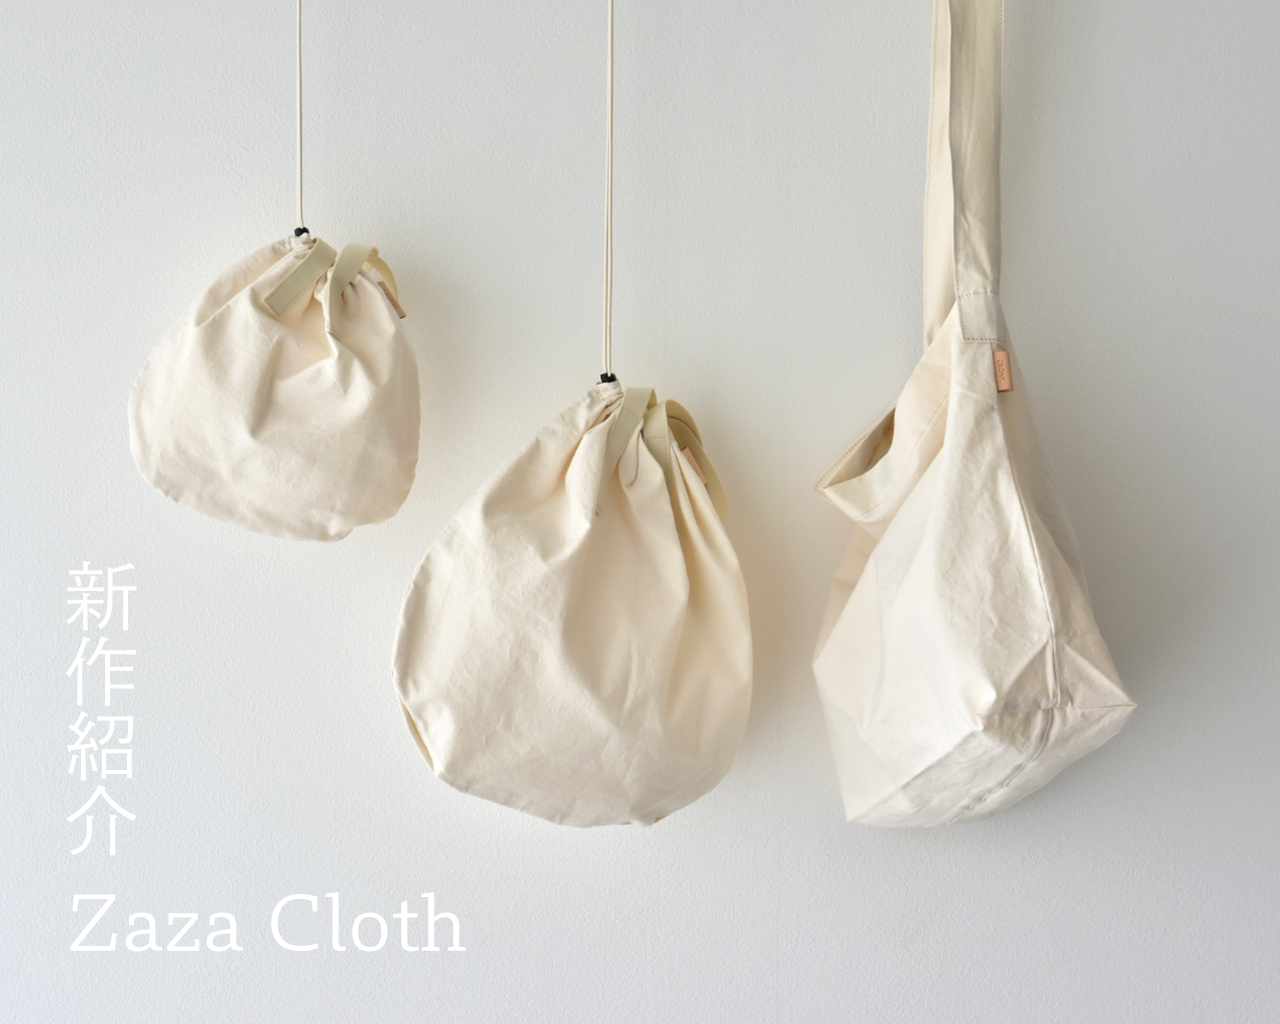 ◆新作紹介◆ 『静岡・遠州地方で作られるZaza Cloth / ザザクロスを使用したバッグ』